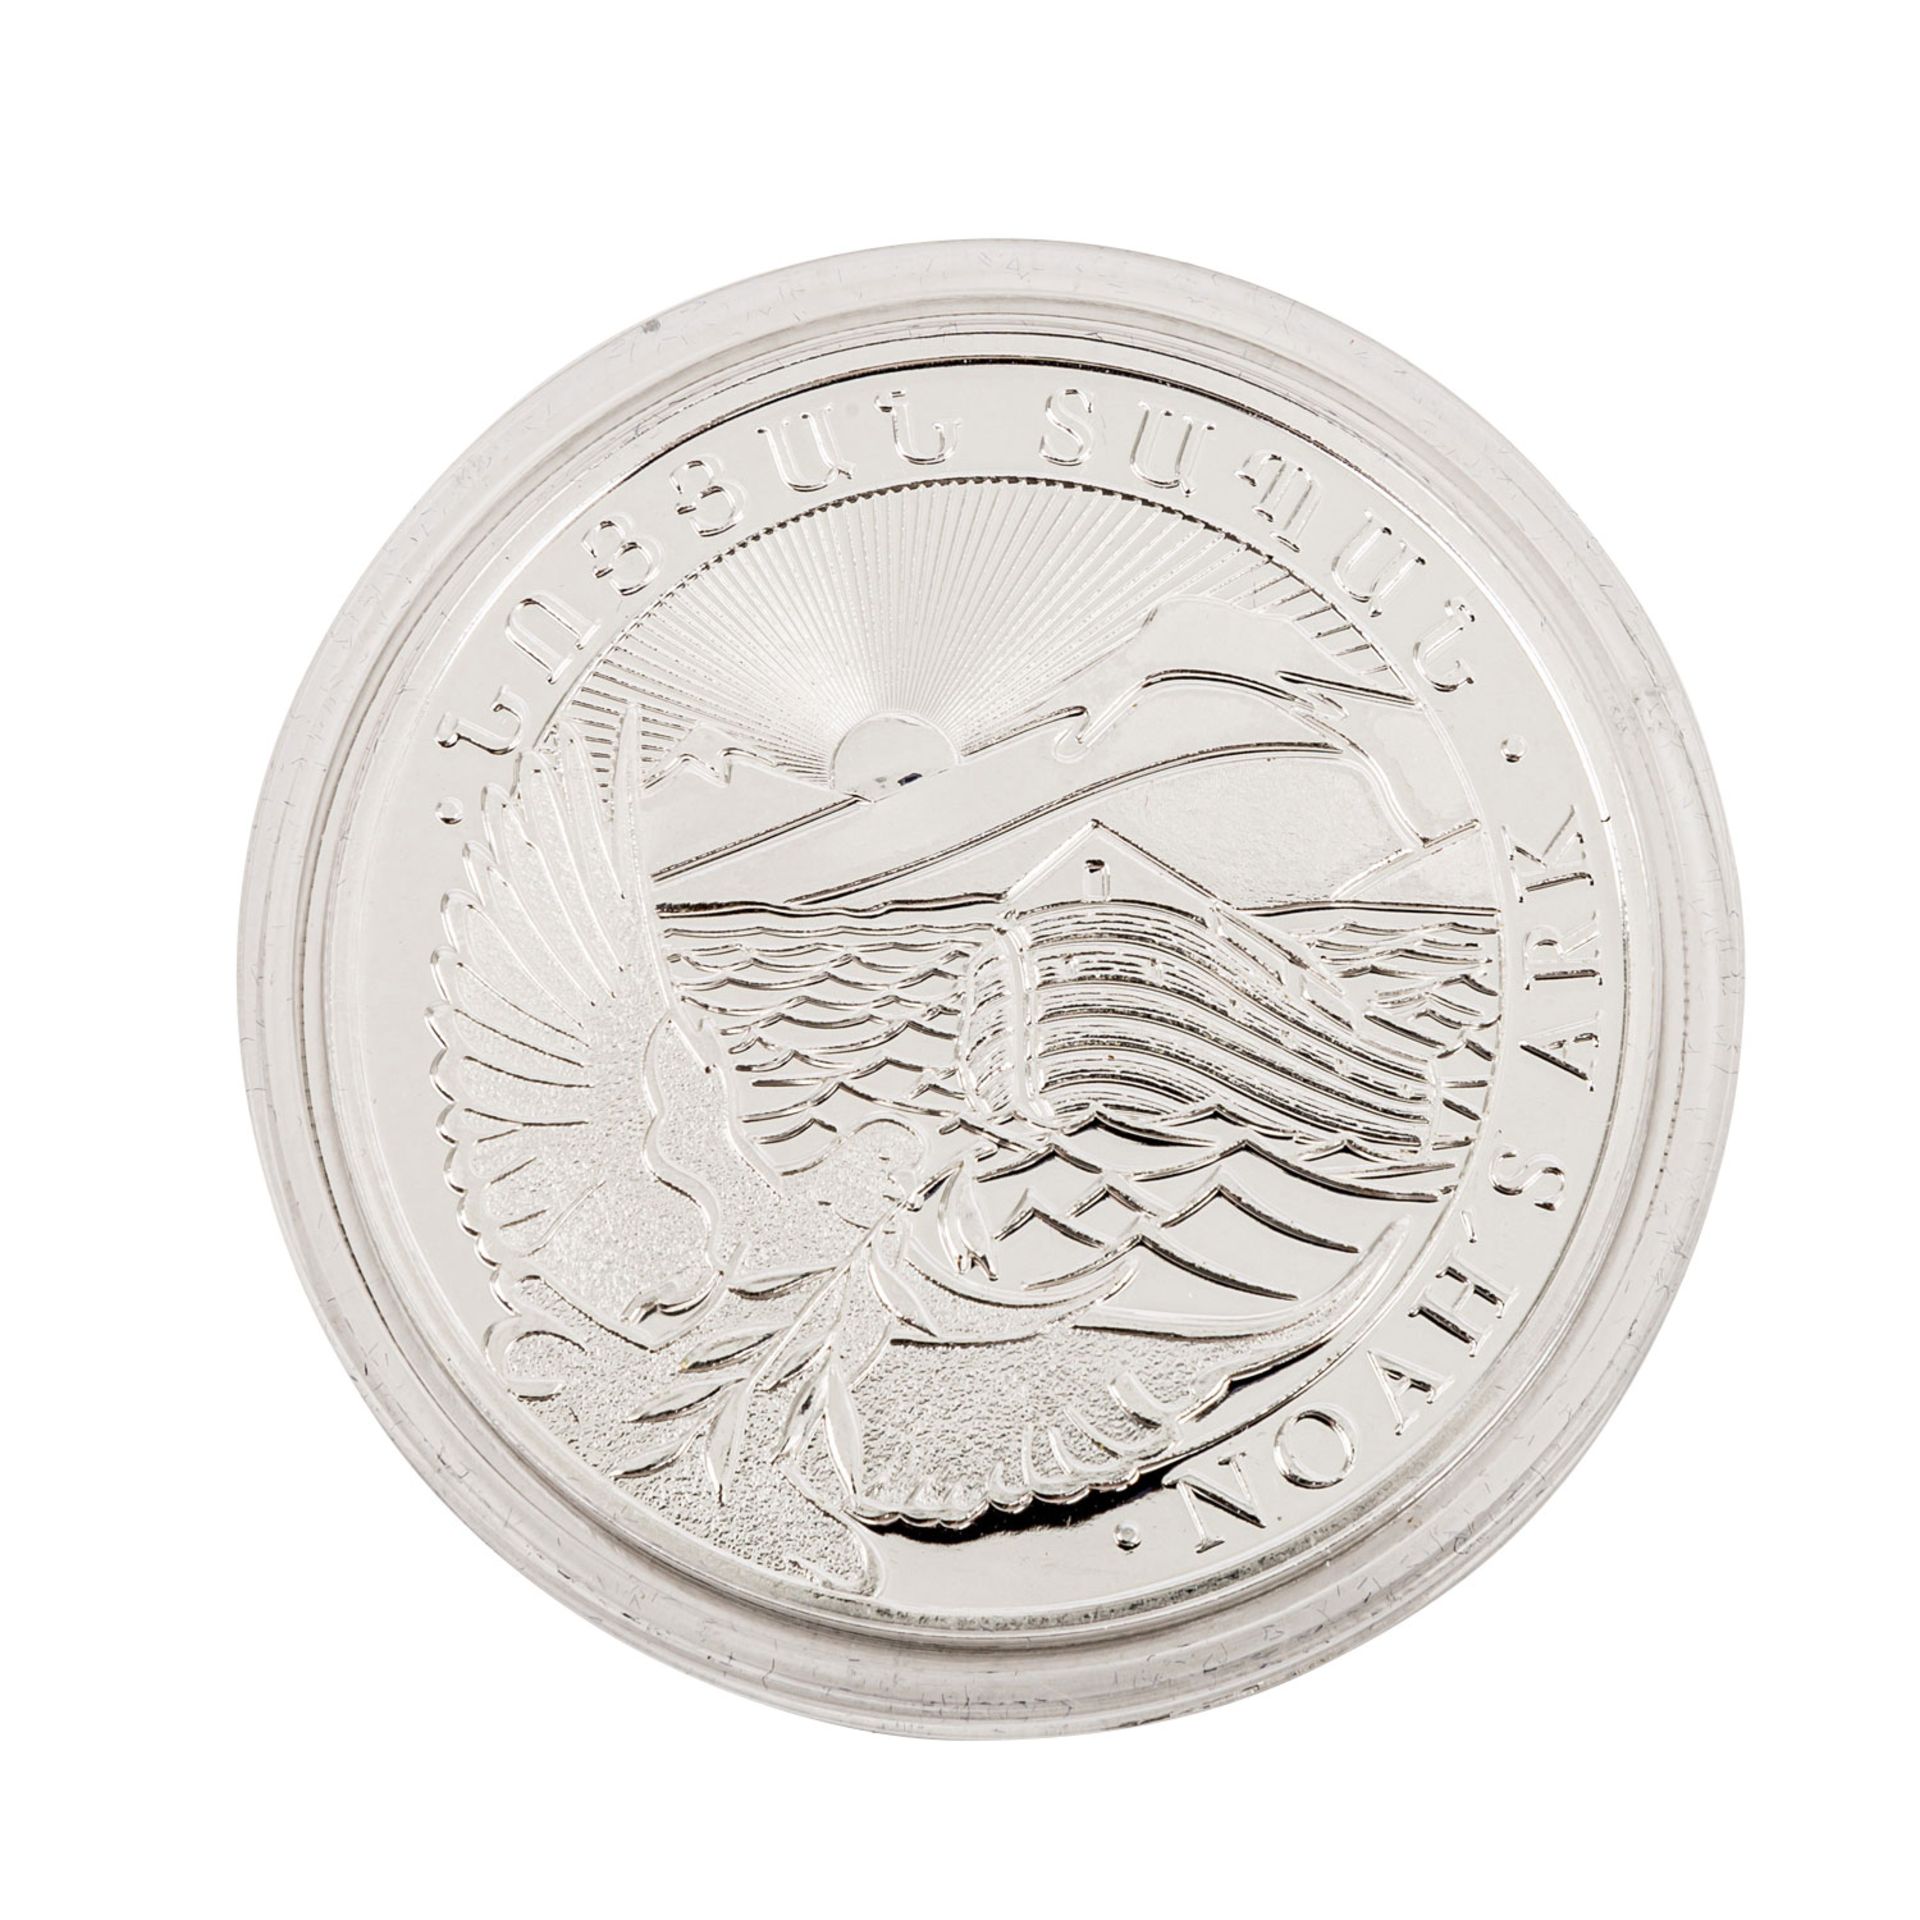 Armenien/SILBER - 1000 Dram 2019,5 Unzen Silber, stArmenia/SILVER - 1000 Dram 2019, 5 oz. silver, - Bild 2 aus 2